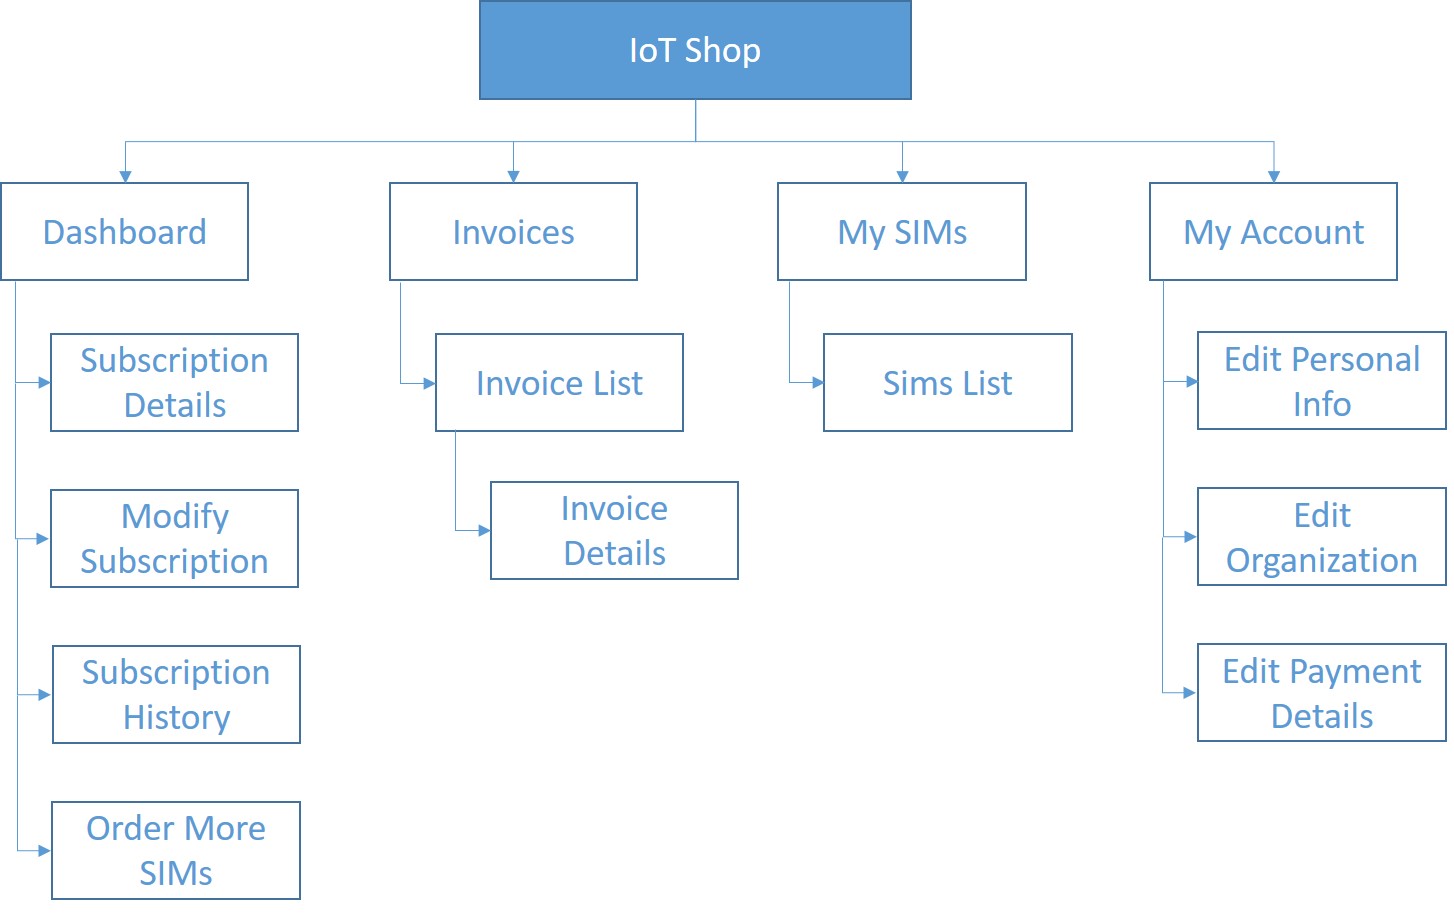 IoT Shop site map